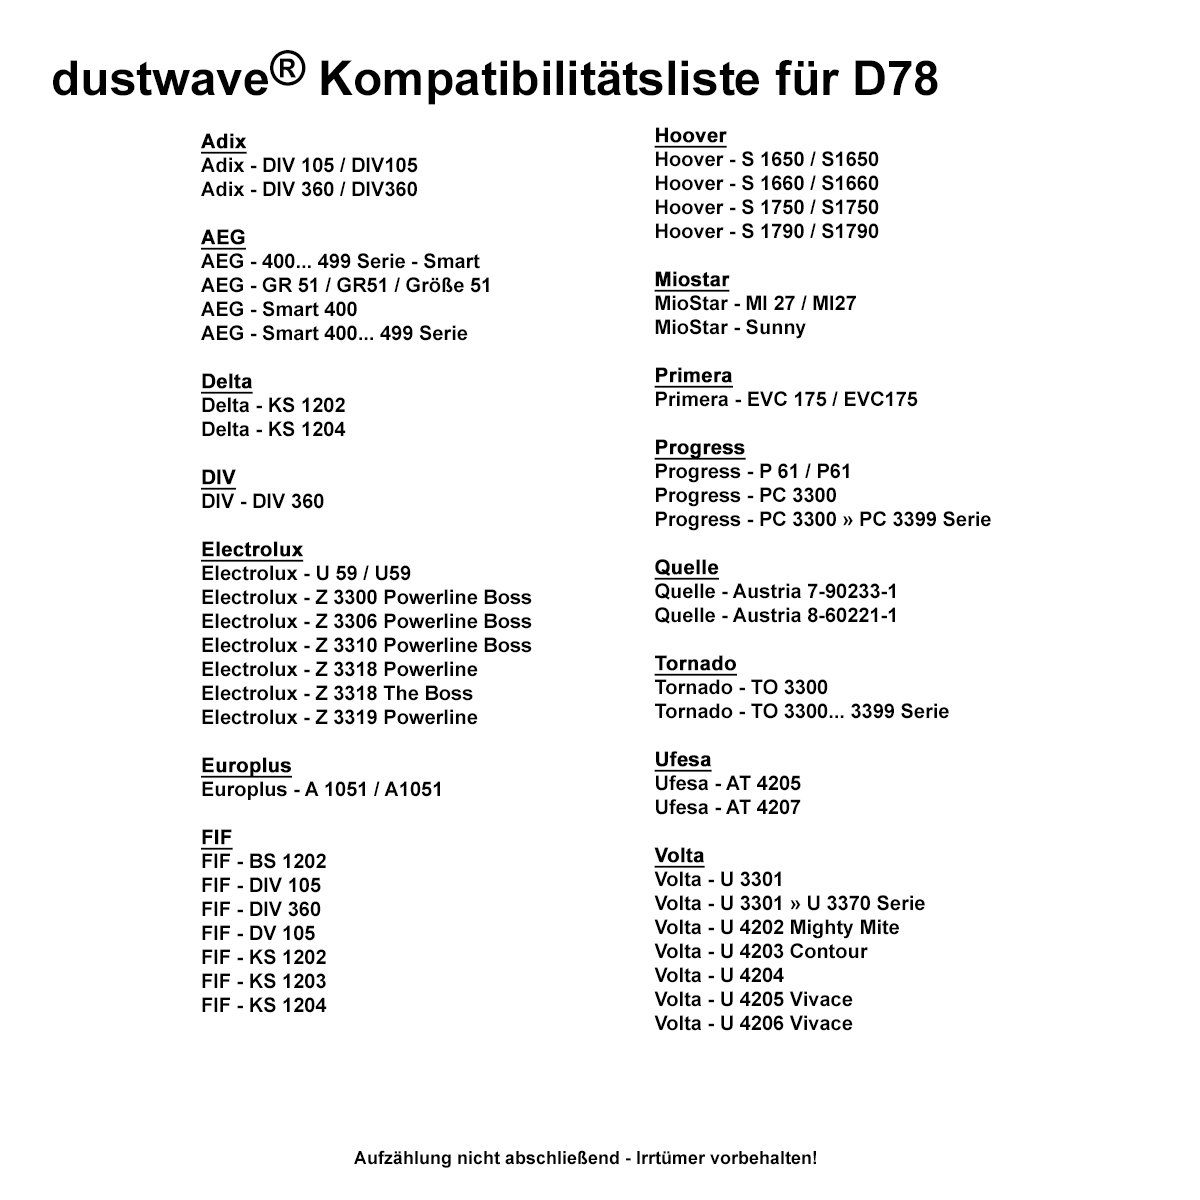 Dustwave Staubsaugerbeutel Sparpack, passend für Staubsaugerbeutel DIV360 / 10 - Hepa-Filter / Sparpack, 1 St., 10 Adix - 15x15cm (ca. zuschneidbar) Adix DIV + DIV360, Standard DIV 360 360